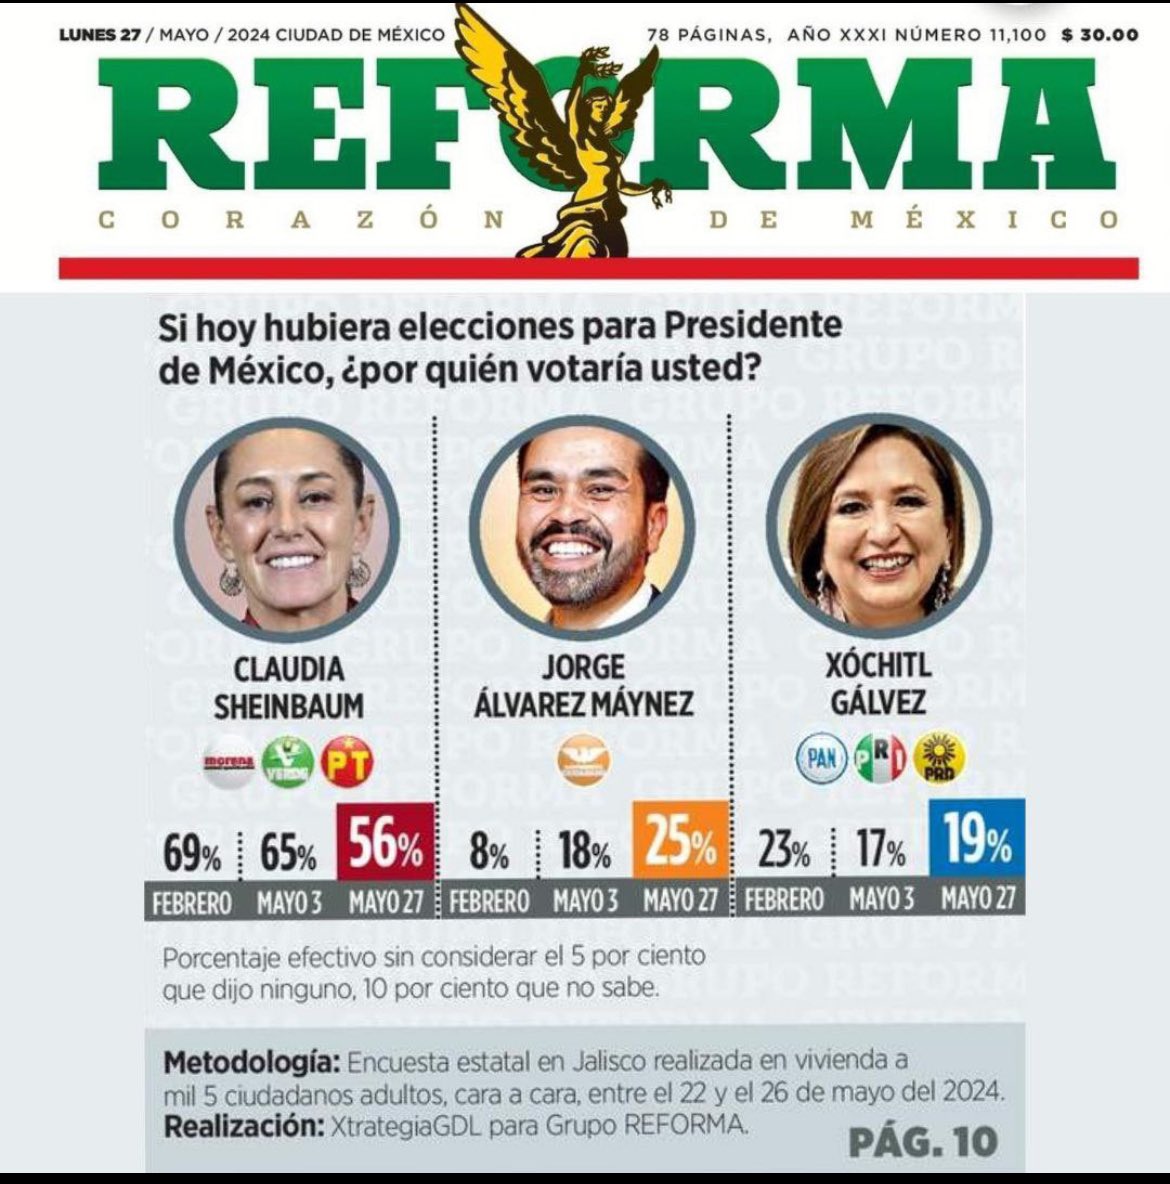 El gobierno de @lopezobrador_ por fin compró al @Reforma, se acabó la libertad de expresión y el pensamiento crítico. 

#GuacamayaLeaks
#GuacamayaNews